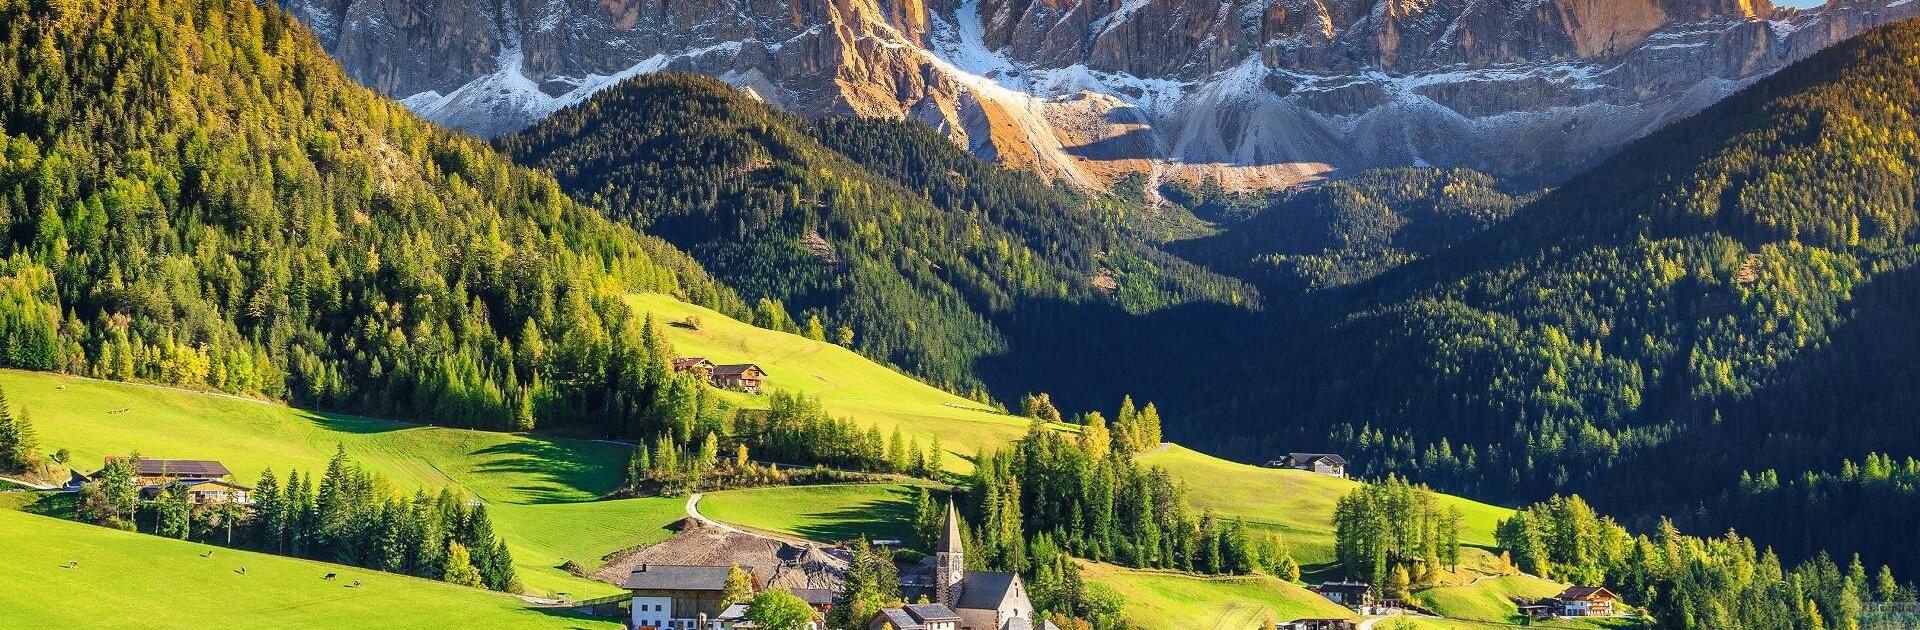 Olaszország - fürdők, hegyek, agroturizmus